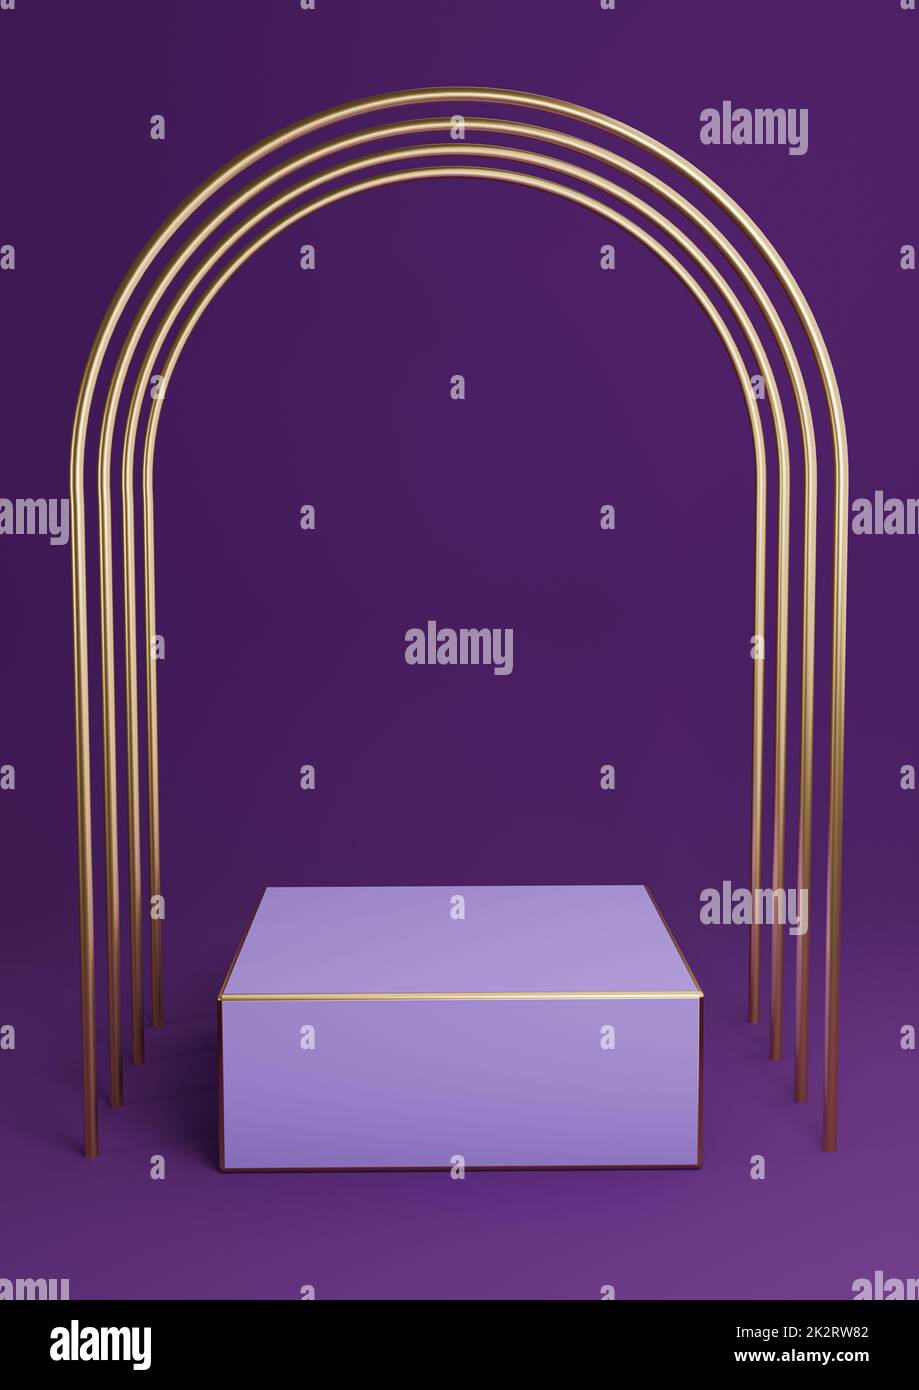 Dunkellila, violette 3D-Wiedergabe minimaler Produktpräsentation Würfelpodest oder Ständer mit luxuriösen goldenen Bögen und goldenen Linien. Einfache abstrakte Hintergrundkomposition. Stockfoto